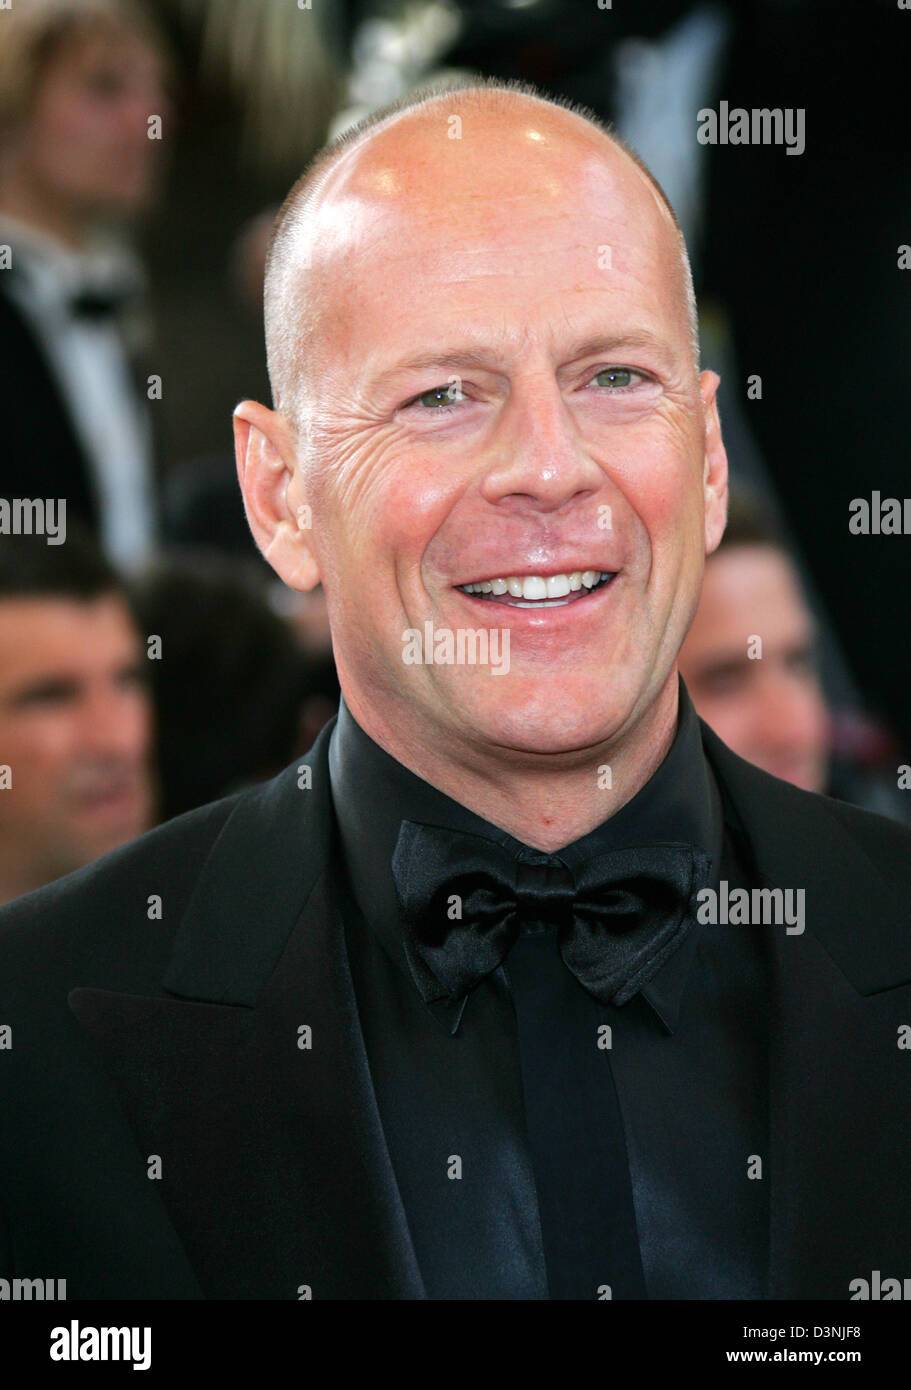 Noi attore americano Bruce Willis arriva alla premiere del film "oltre la siepe' alla 59a Film Festival di Cannes, Francia, domenica 21 maggio 2006. Foto: Hubert Boesl Foto Stock